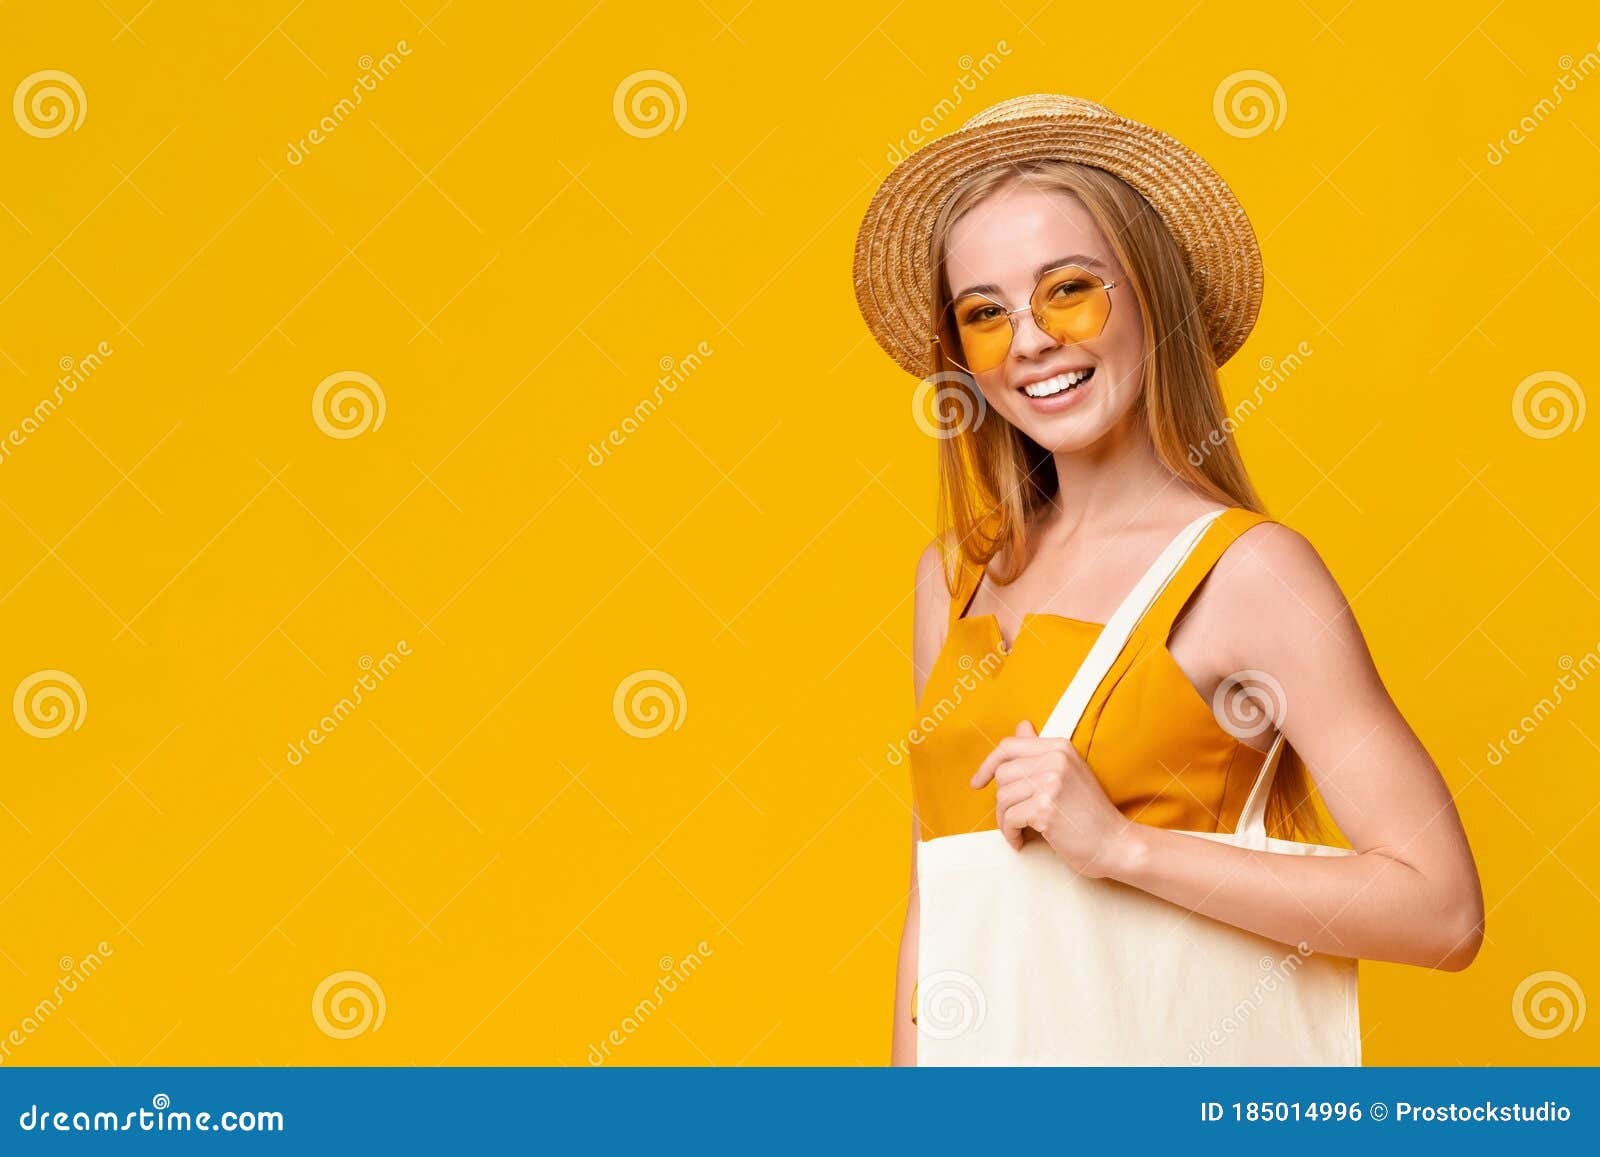 θερινή προσφορά. όμορφη κοπέλα με καπέλο και γυαλιά ηλίου χαμογελώντας στην  κάμερα Στοκ Εικόνες - εικόνα από lifestyle, bagel: 185014996